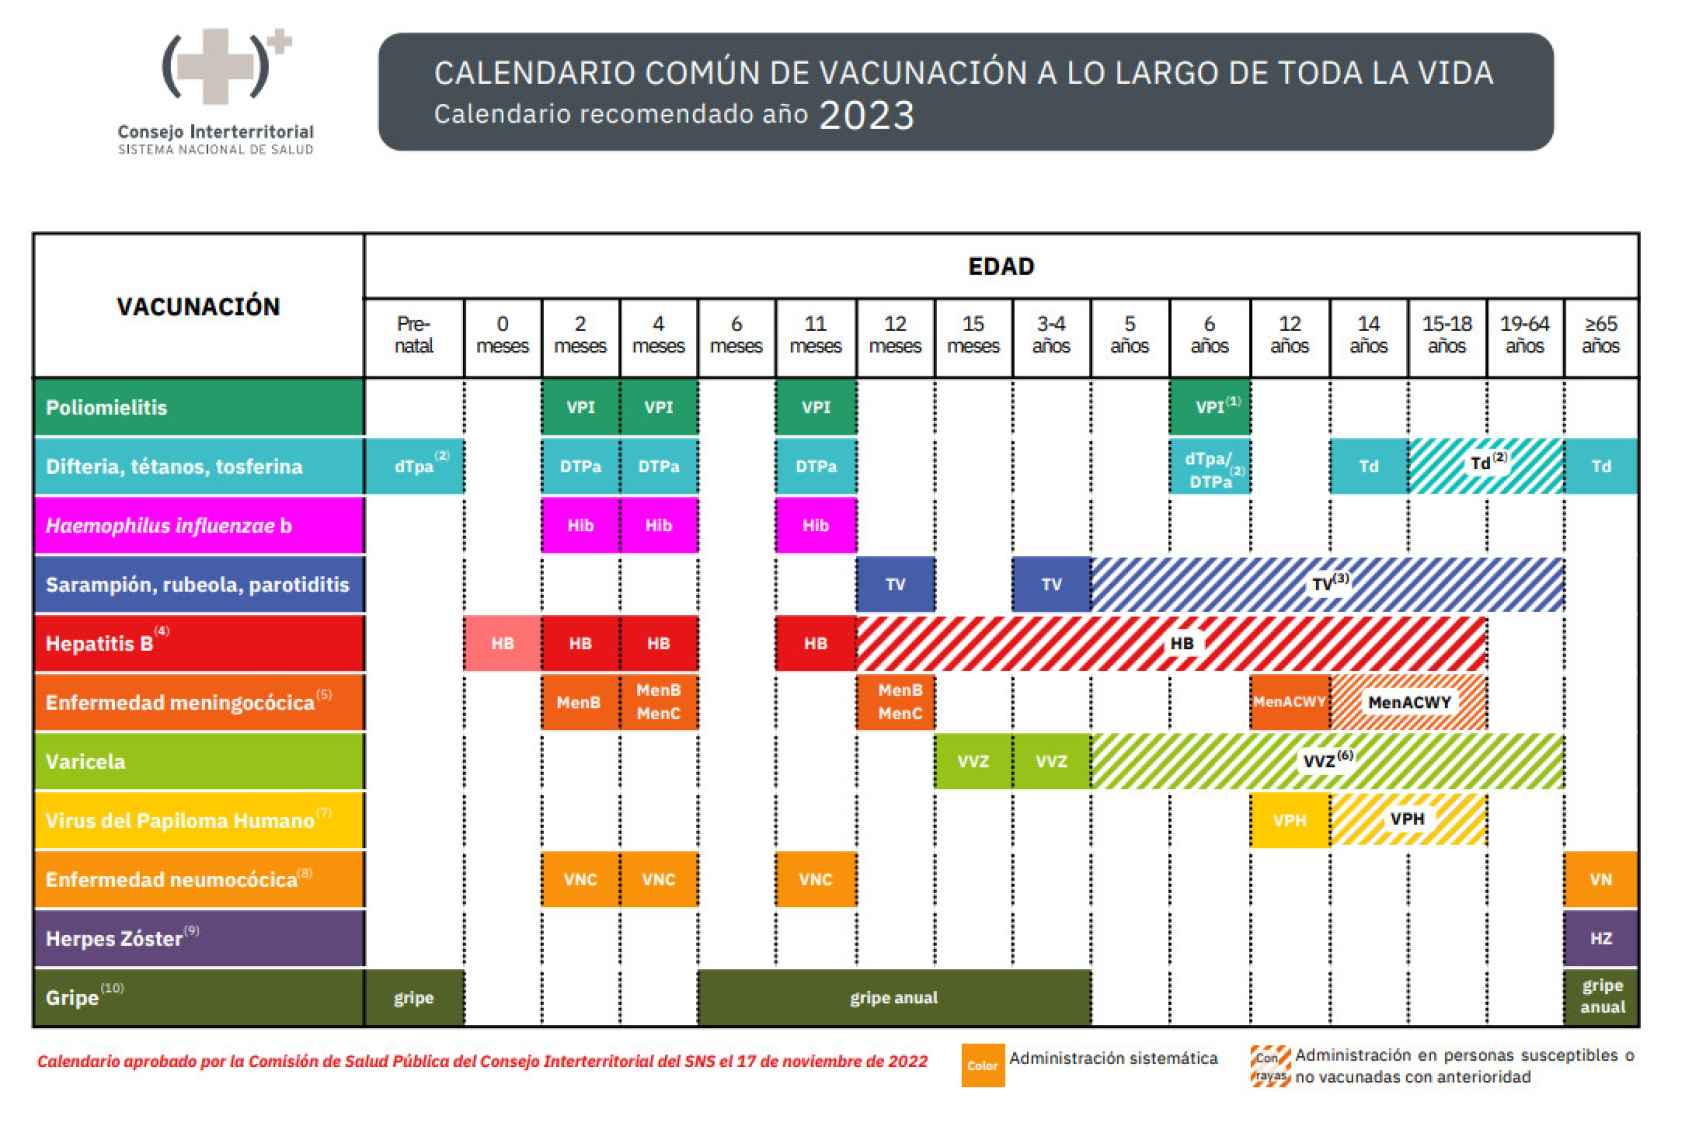 Calendario Común de Vacunación a lo largo de toda la vida en 2023